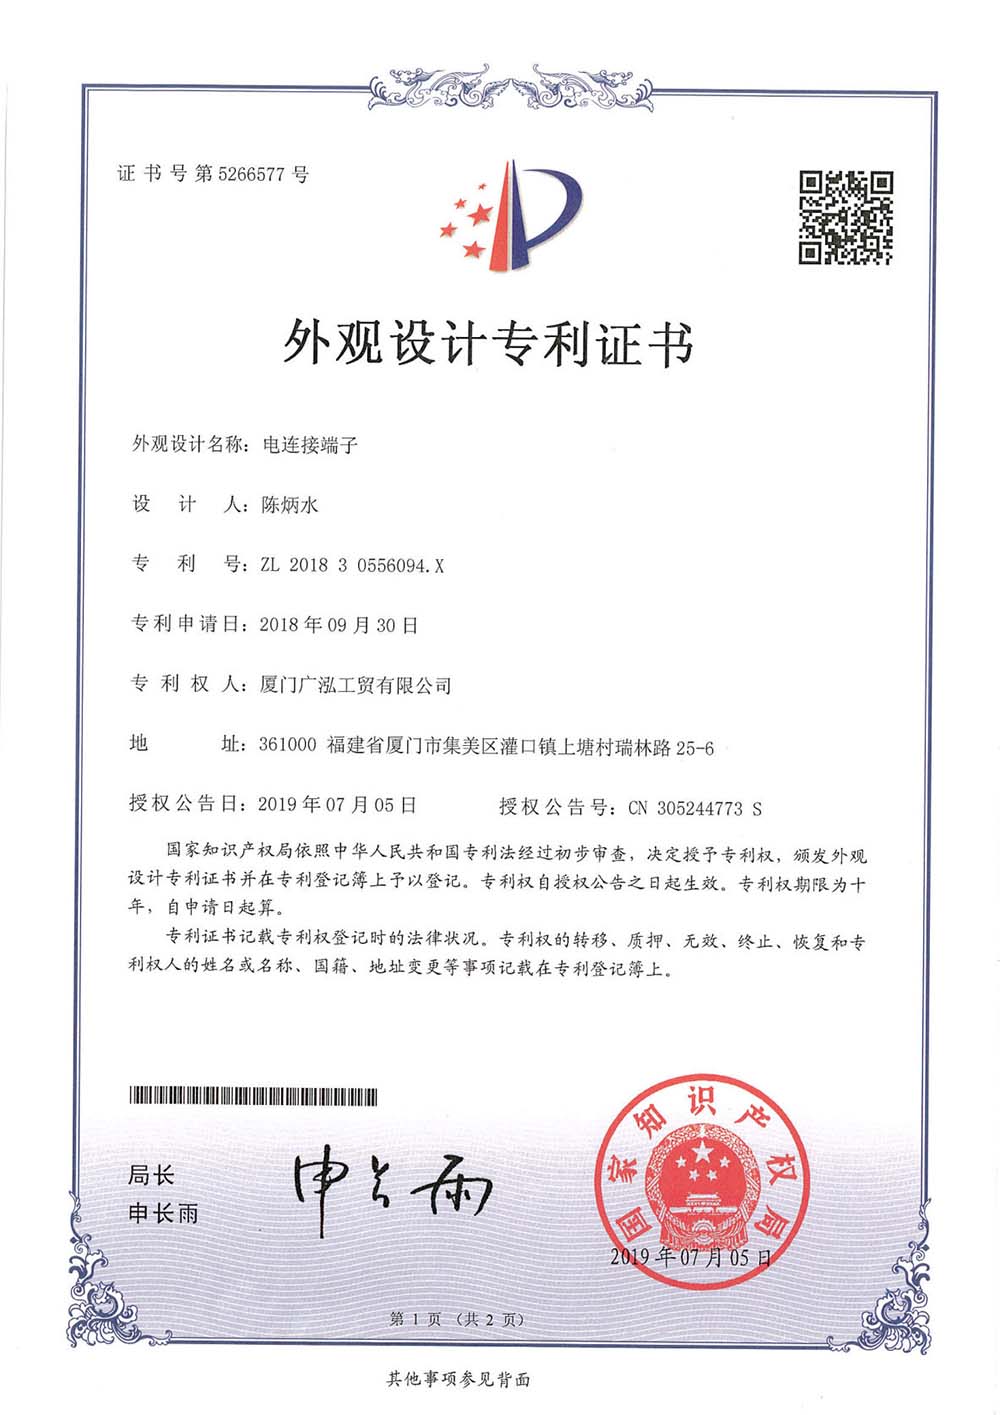 中国電気接続端子201830556094.X外観設計特許